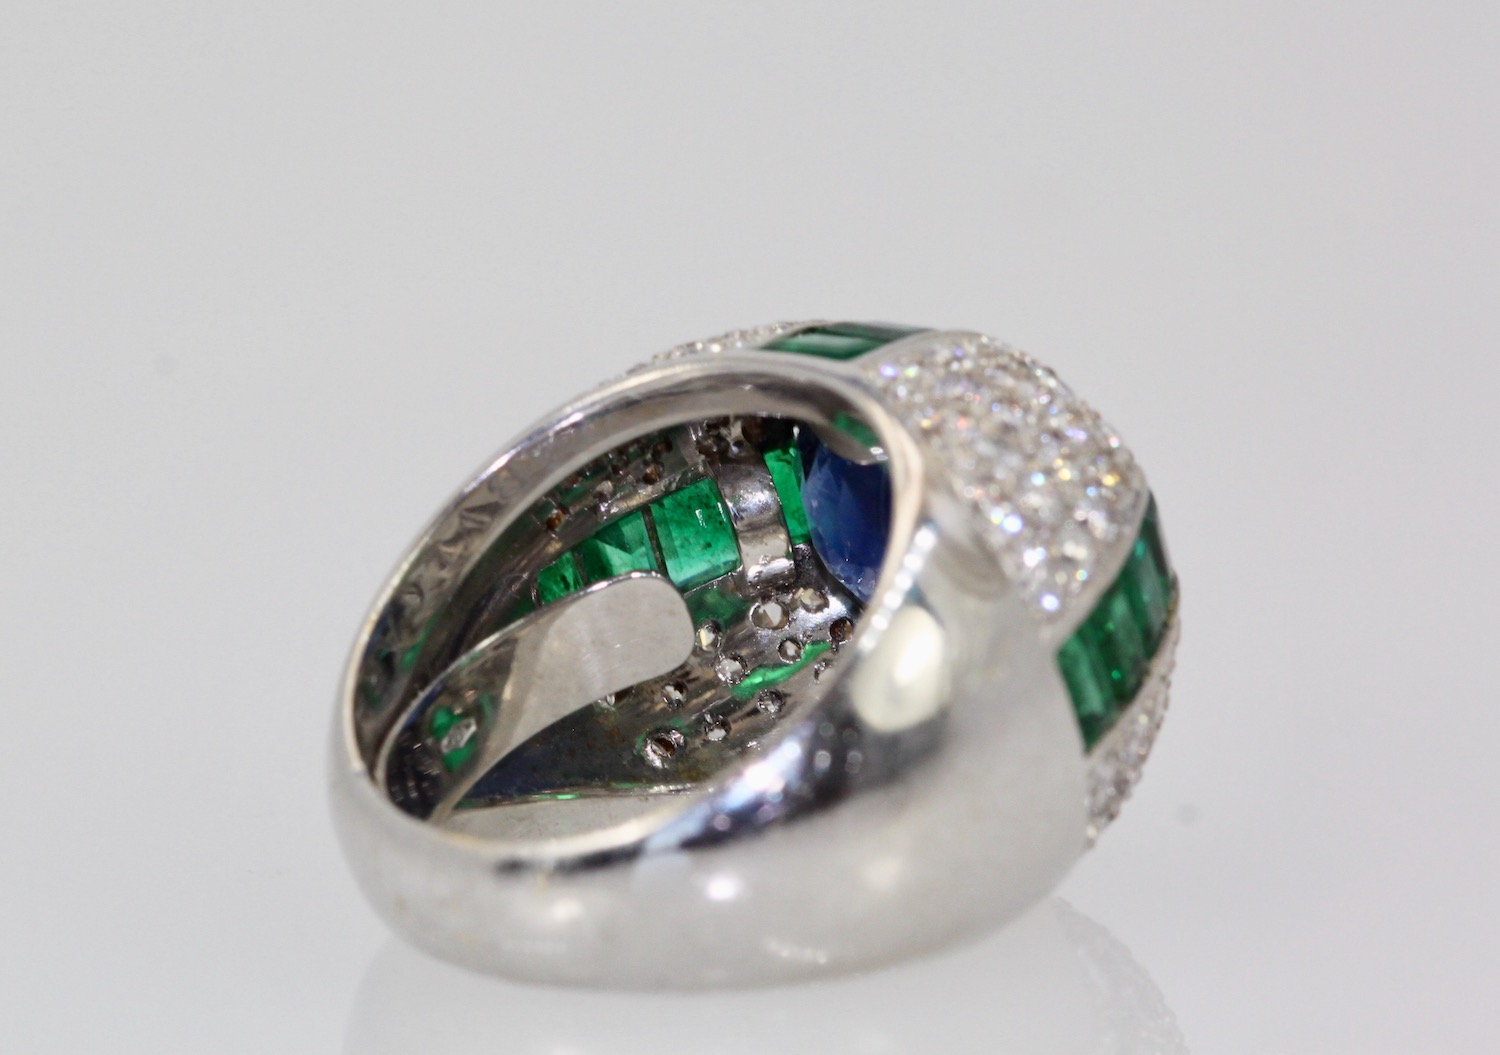 Bulgari Trombino Sapphire Emerald Diamond Ring – inside